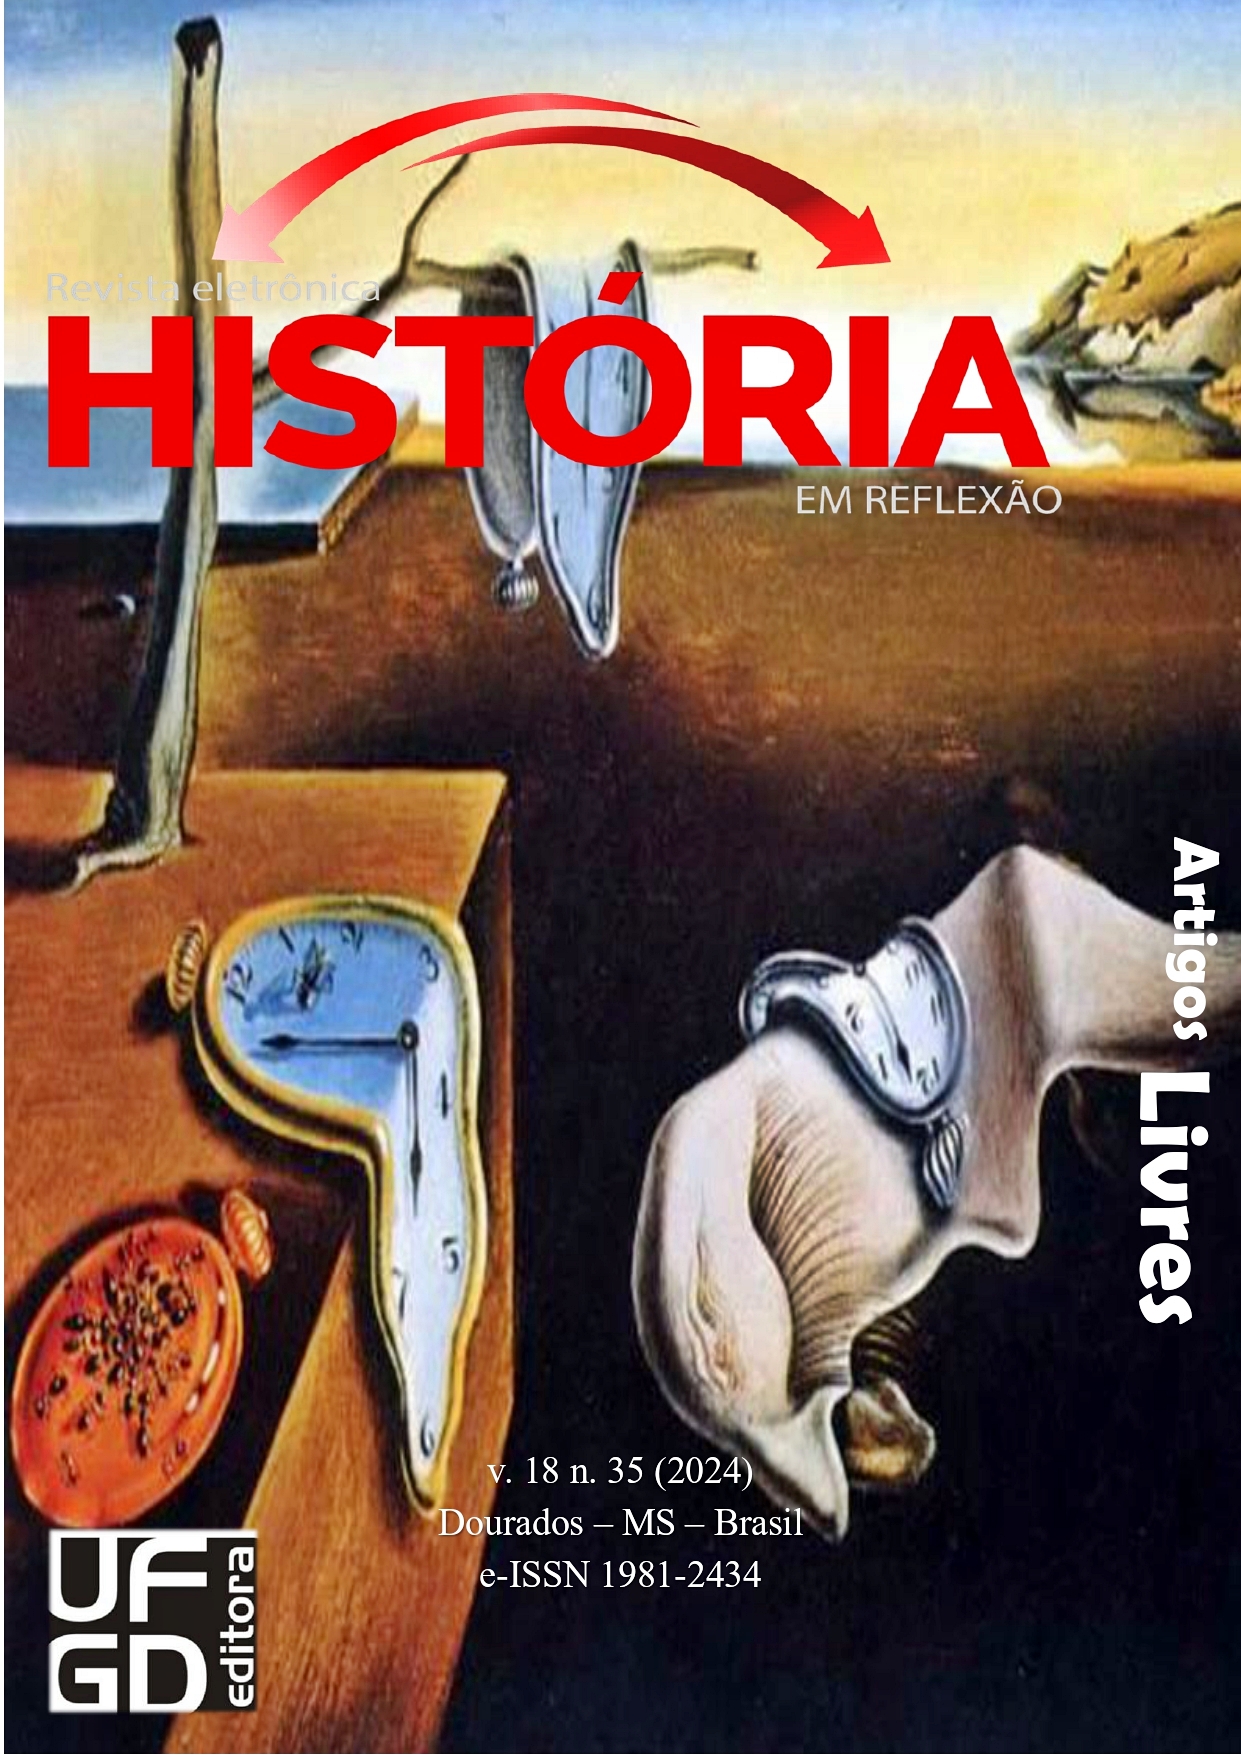 					View Vol. 18 No. 35 (2024): Revista História em Reflexão
				